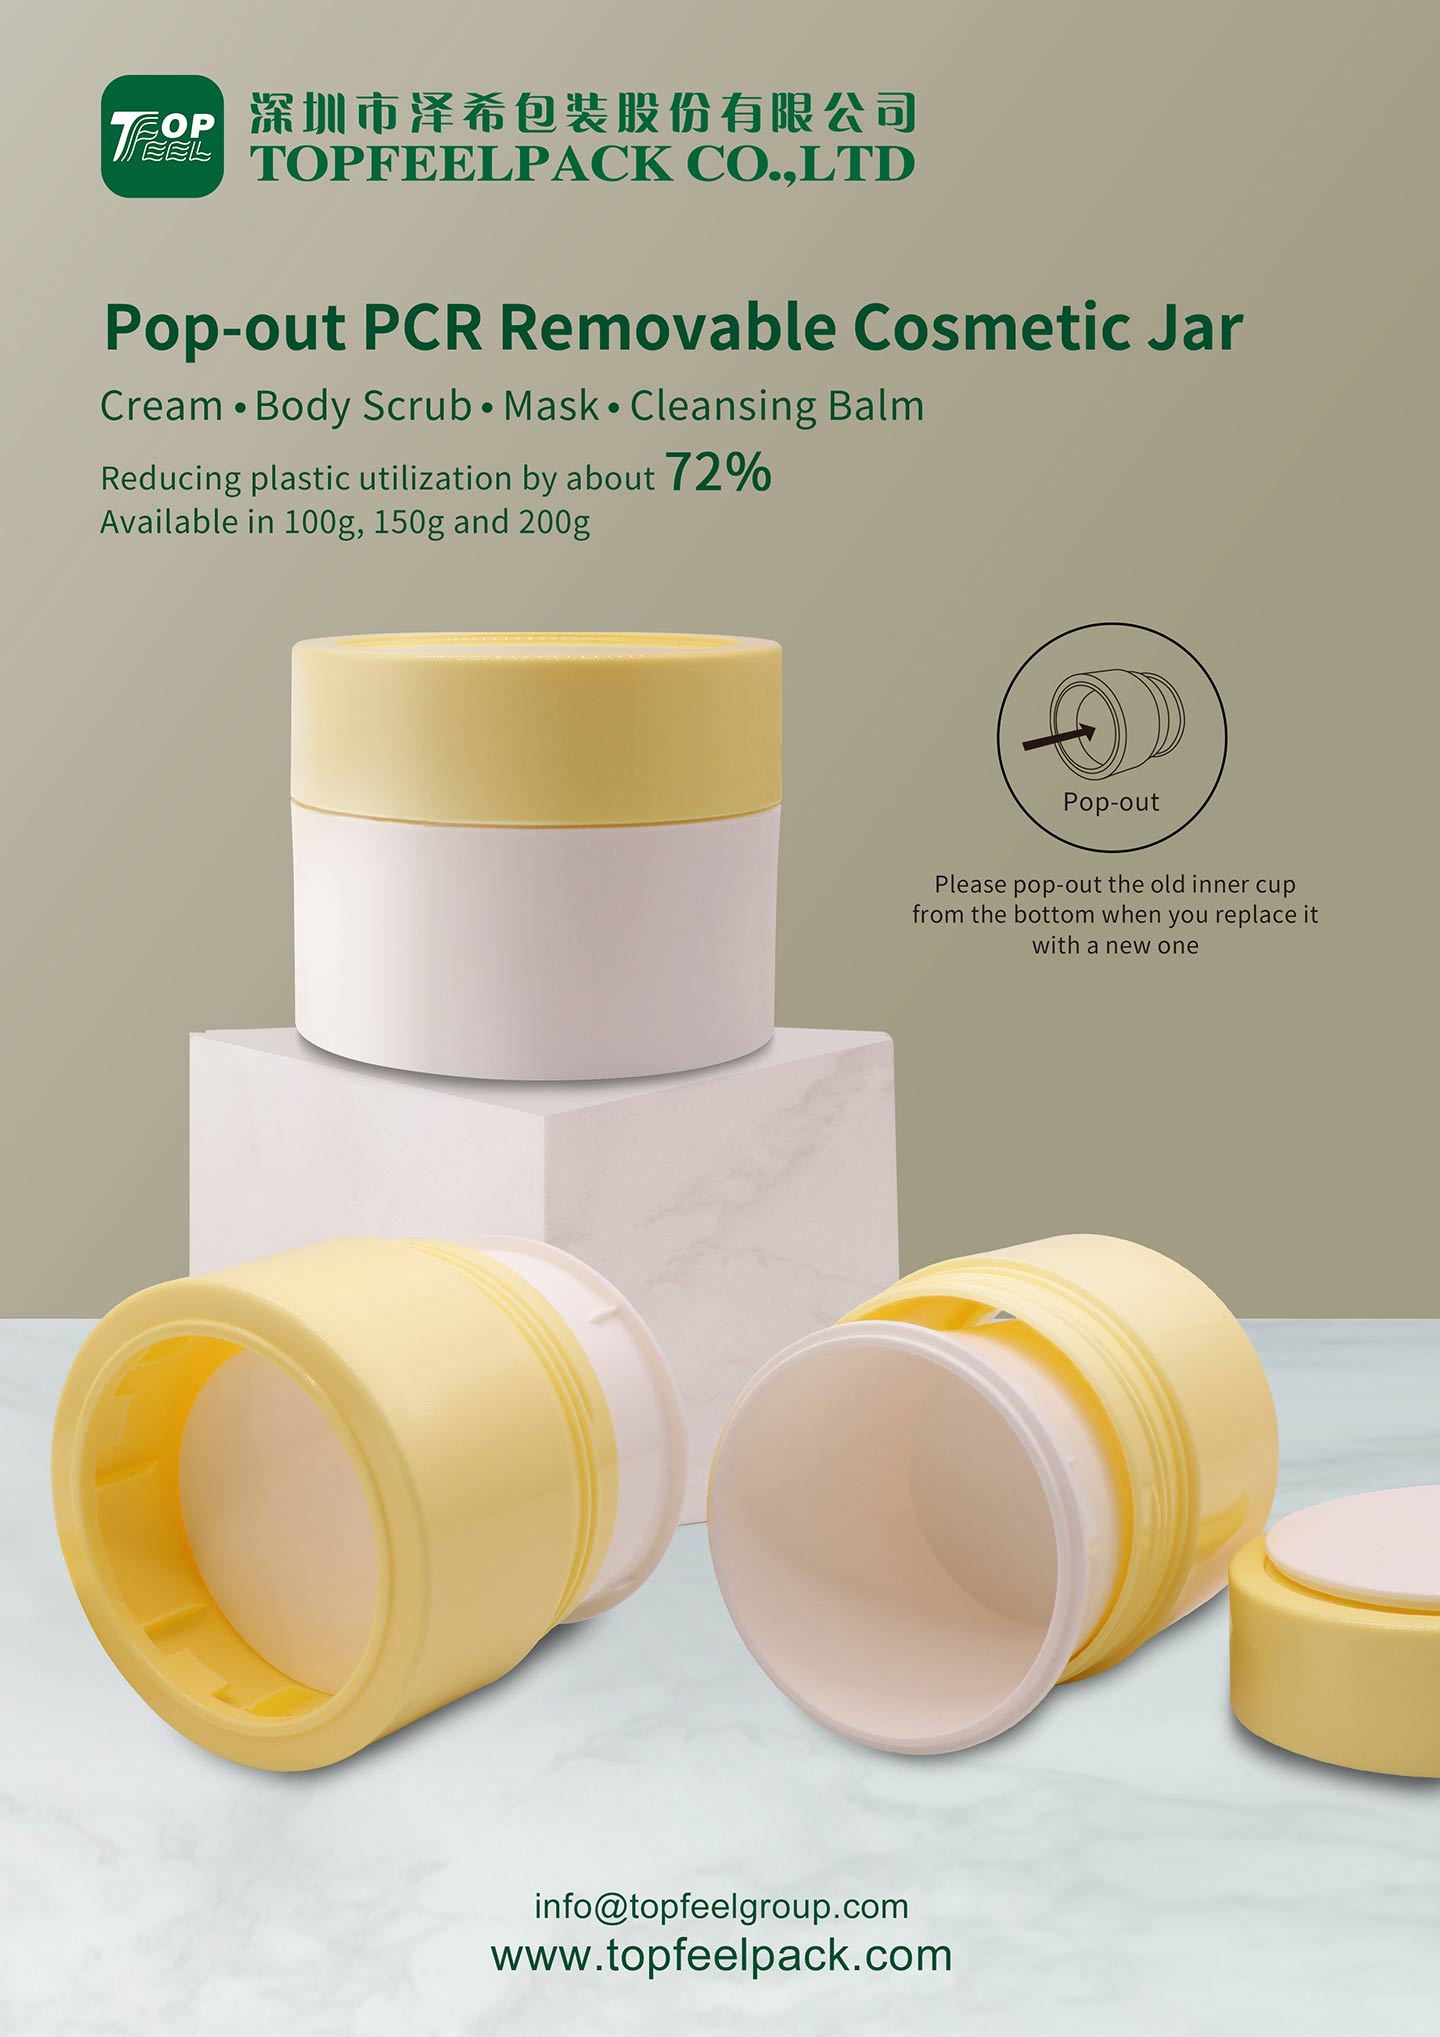 PJ52 Cream Jar Topfeelpack report